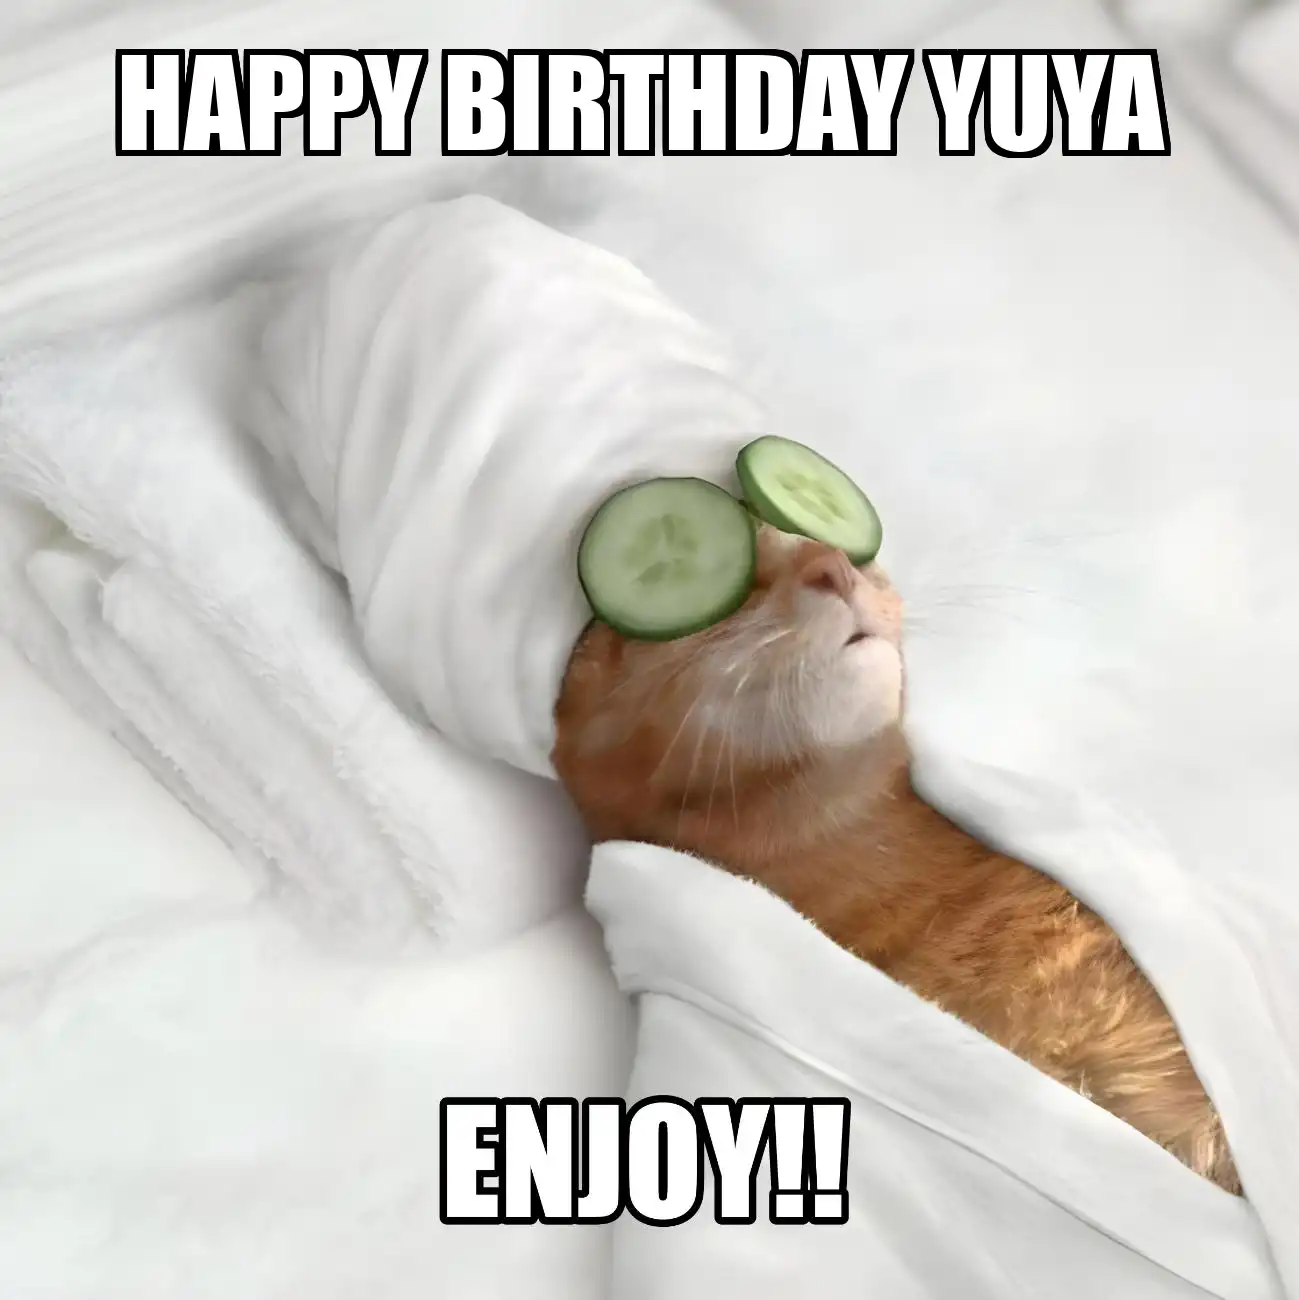 Happy Birthday Yuya Enjoy Cat Meme